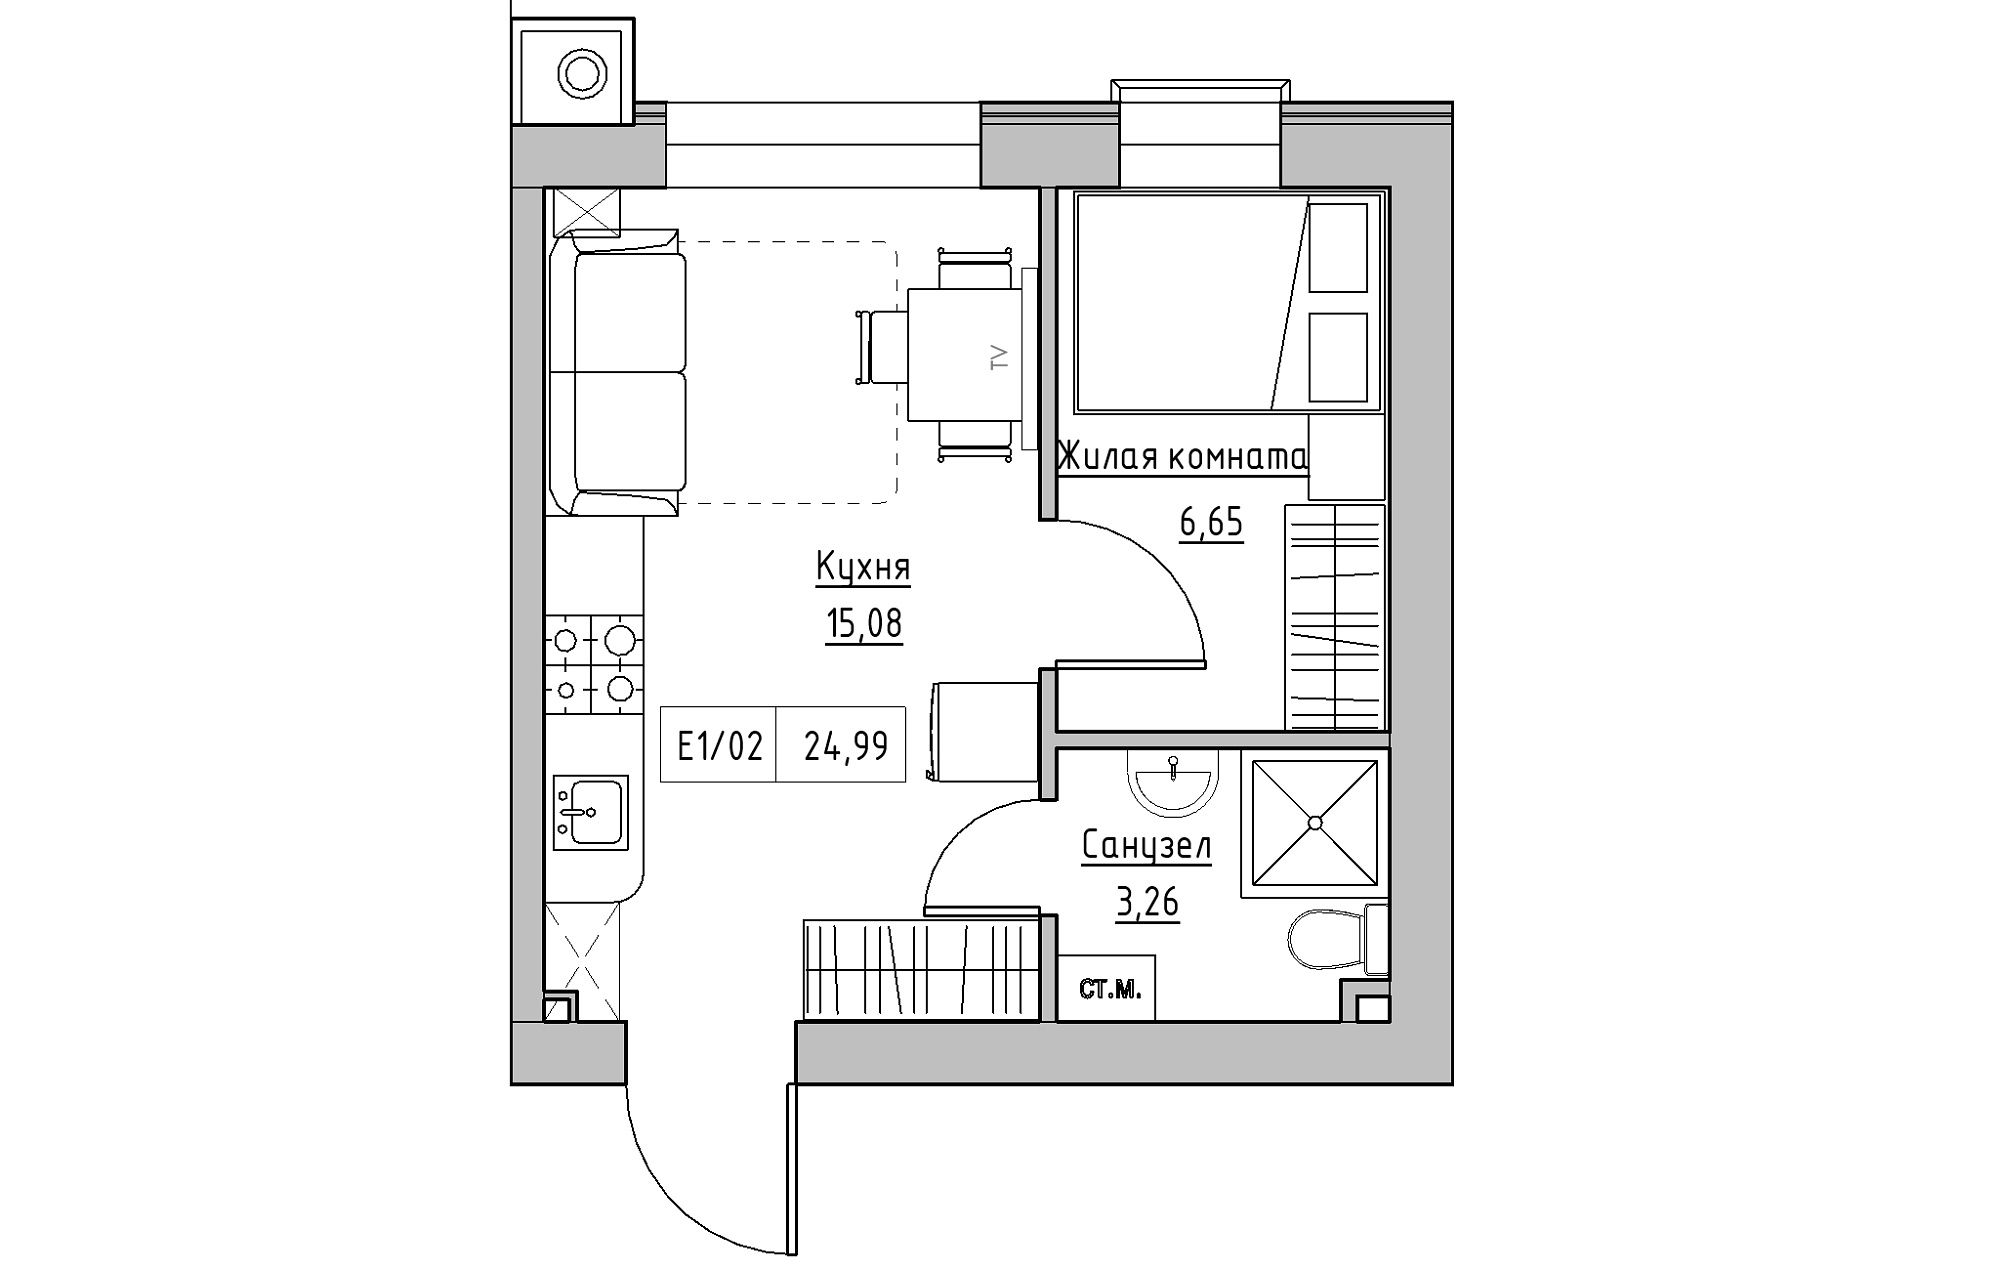 Планування 1-к квартира площею 24.99м2, KS-013-04/0010.